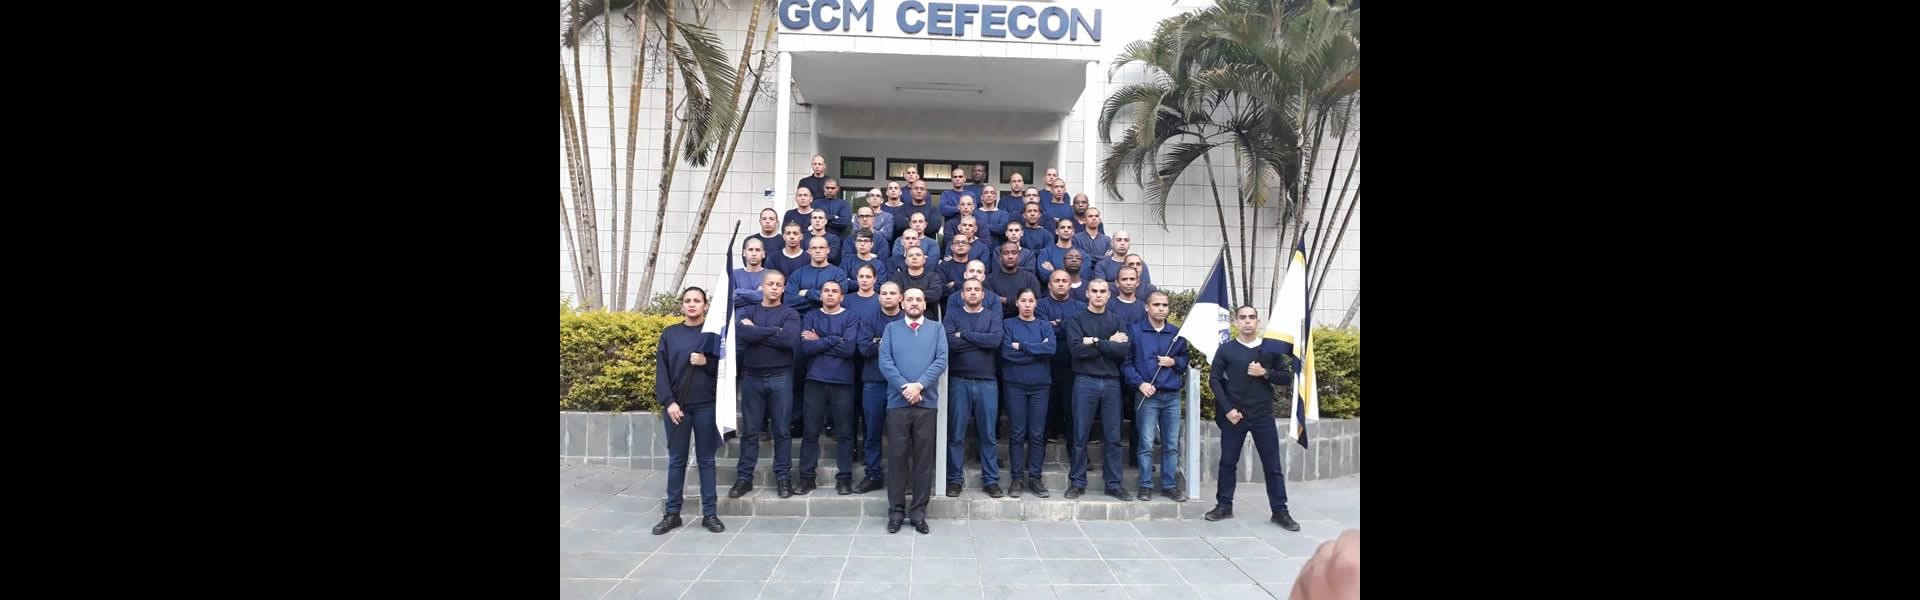 Treinamento aos policias da CEFECON - Embú das Artes no dia 05/07/2018